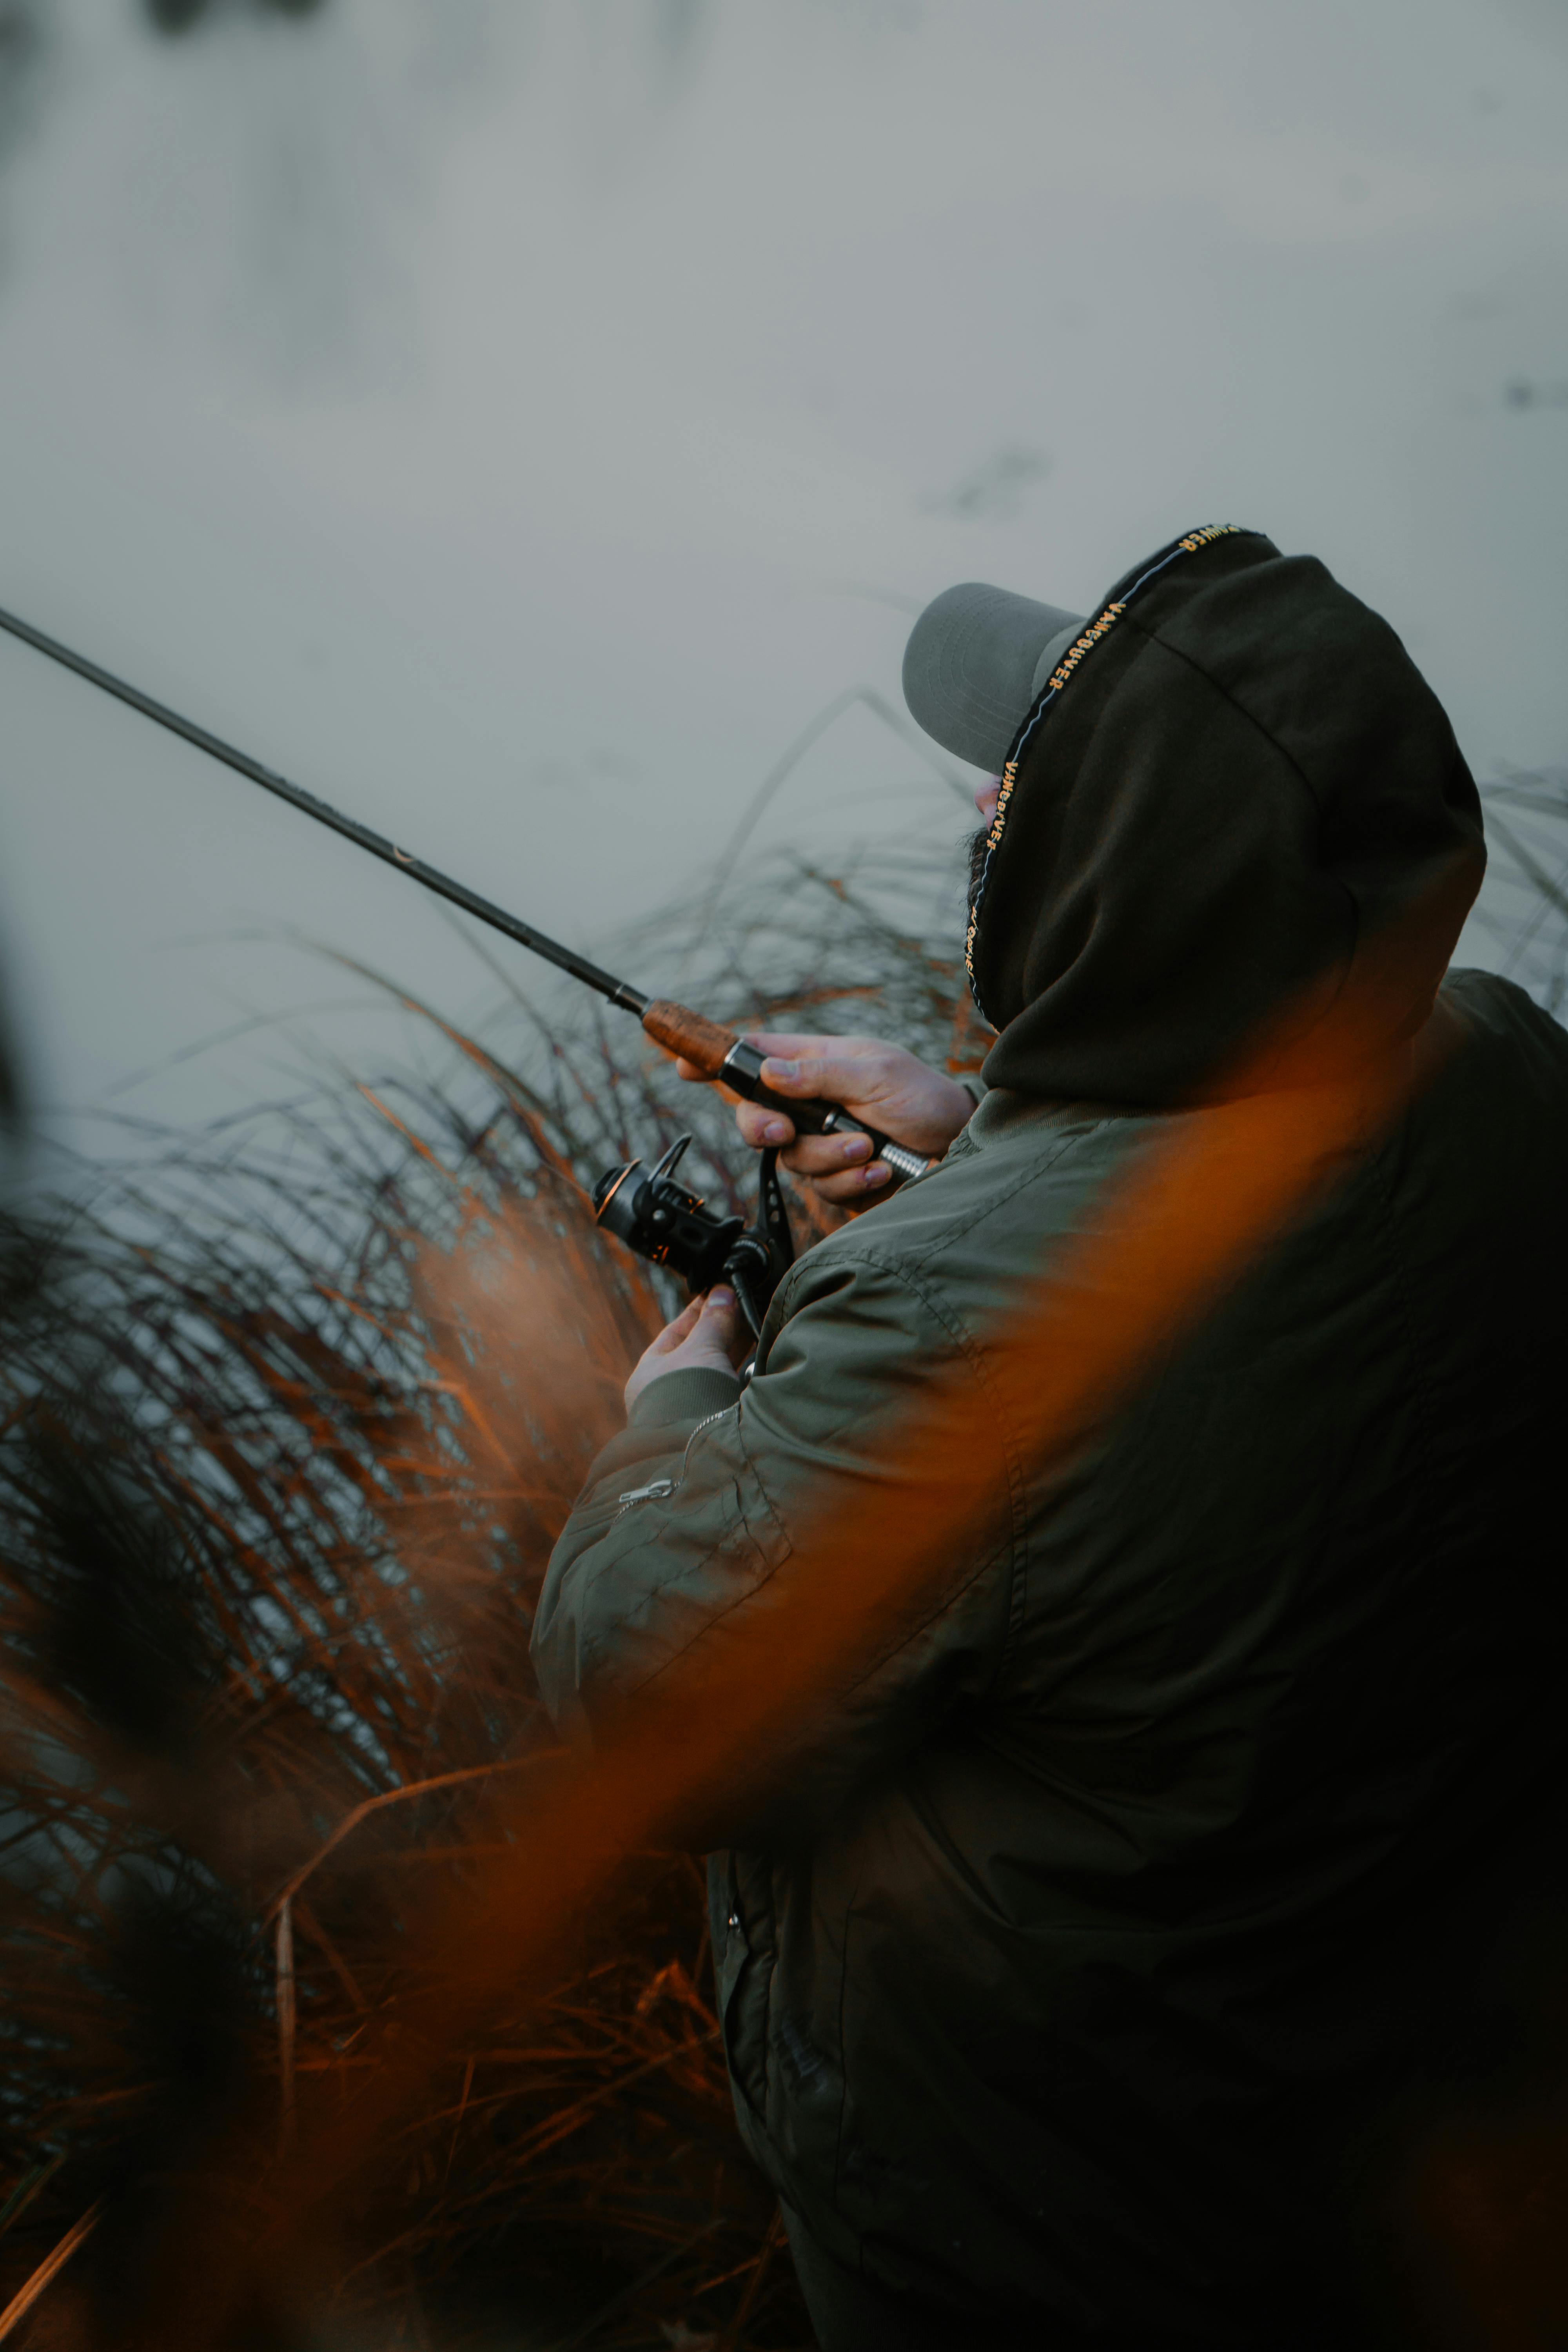 Man Fishing on Riverside · Free Stock Photo